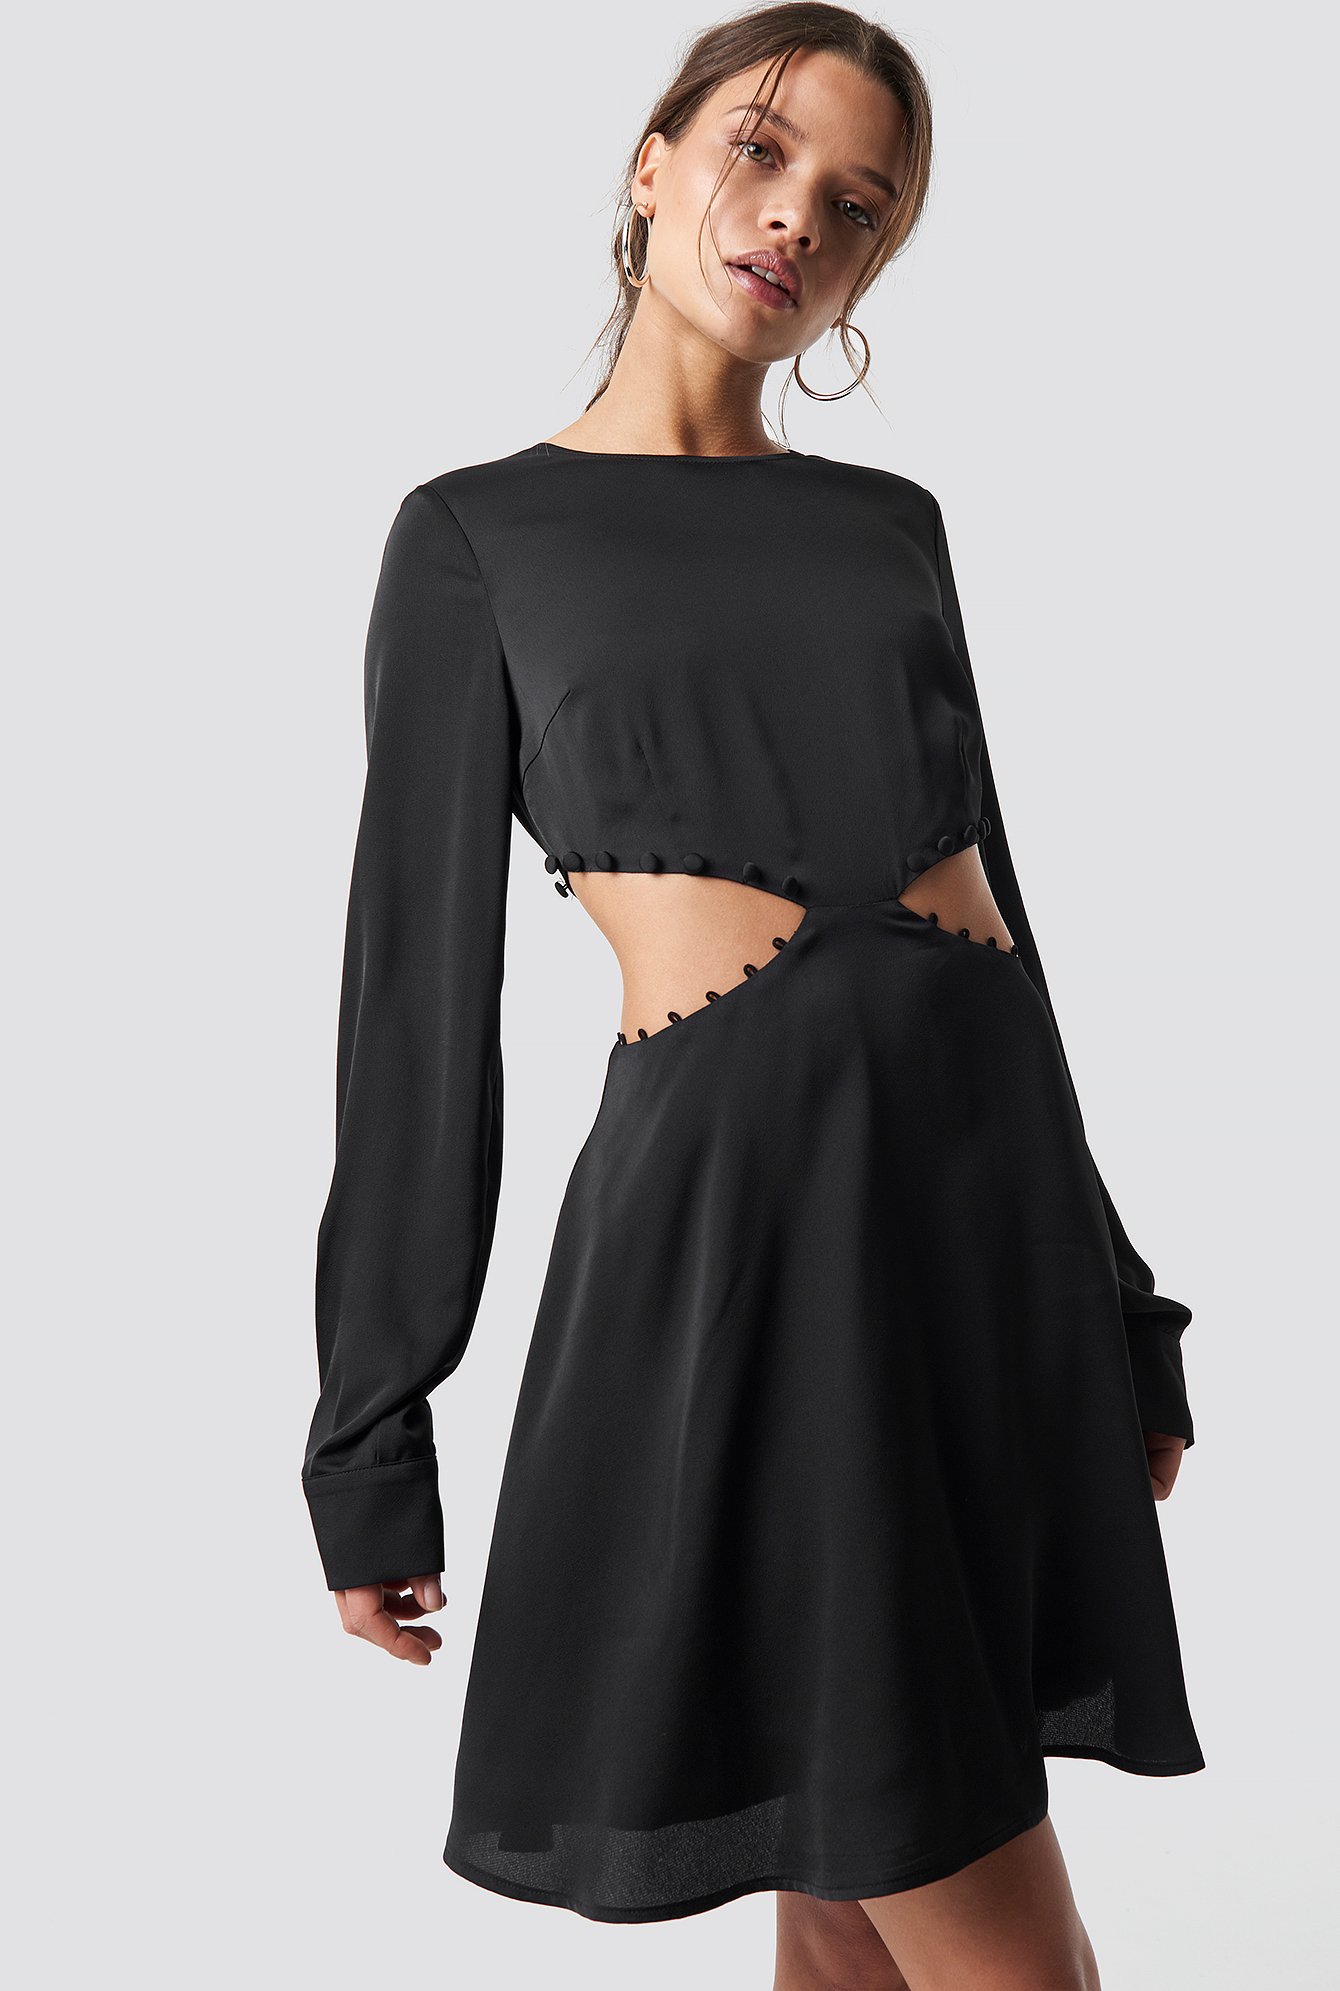 Iva Nikolina x NA-KD Flirty Short Buttoned Dress - Black